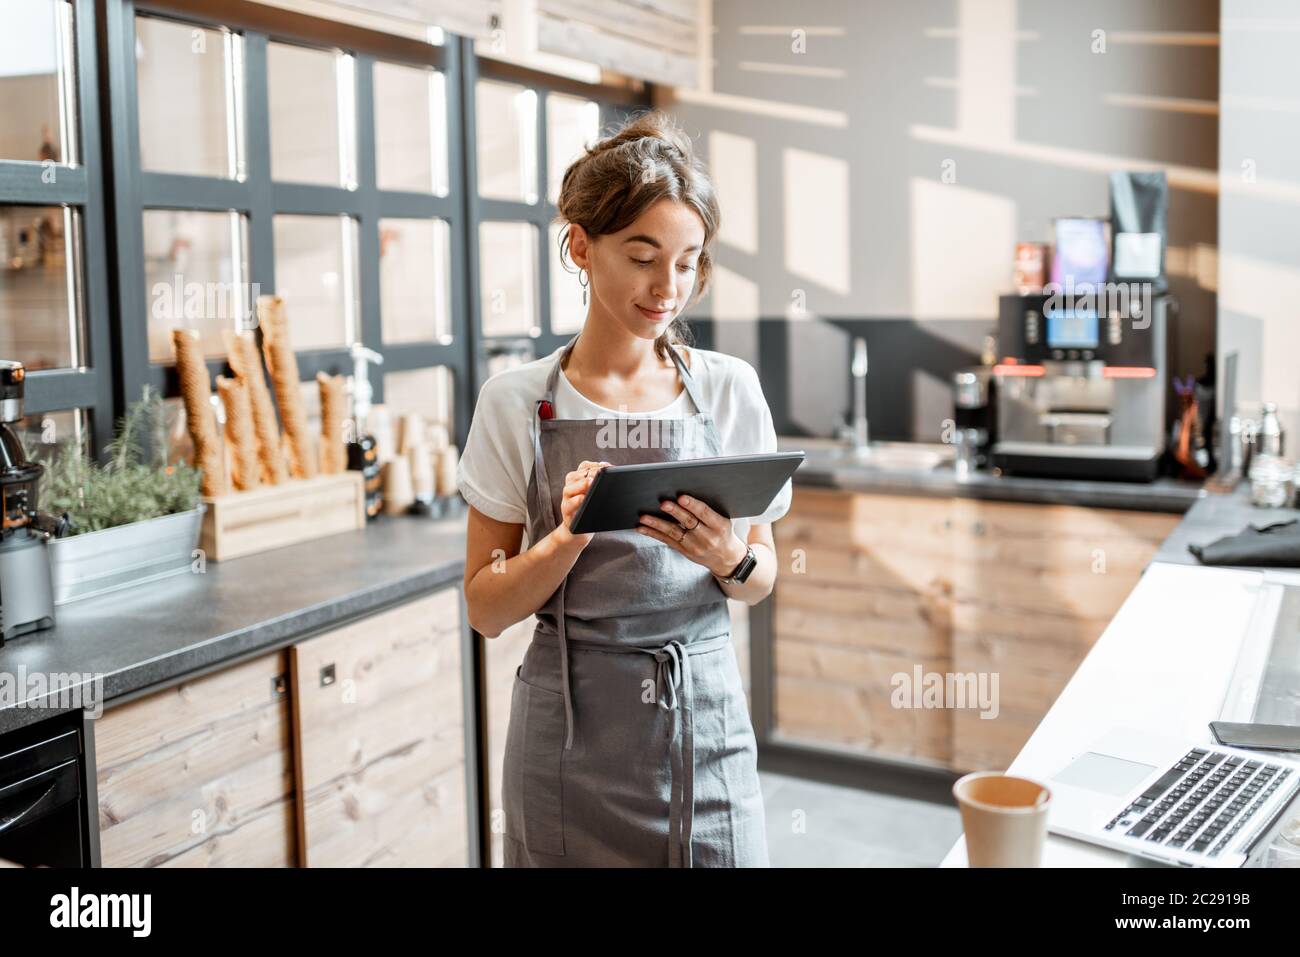 Jeune vendeuse travaillant avec une tablette numérique au comptoir d'un café ou d'un magasin de confiserie. Concept de petite entreprise et technologies dans le domaine des services Banque D'Images